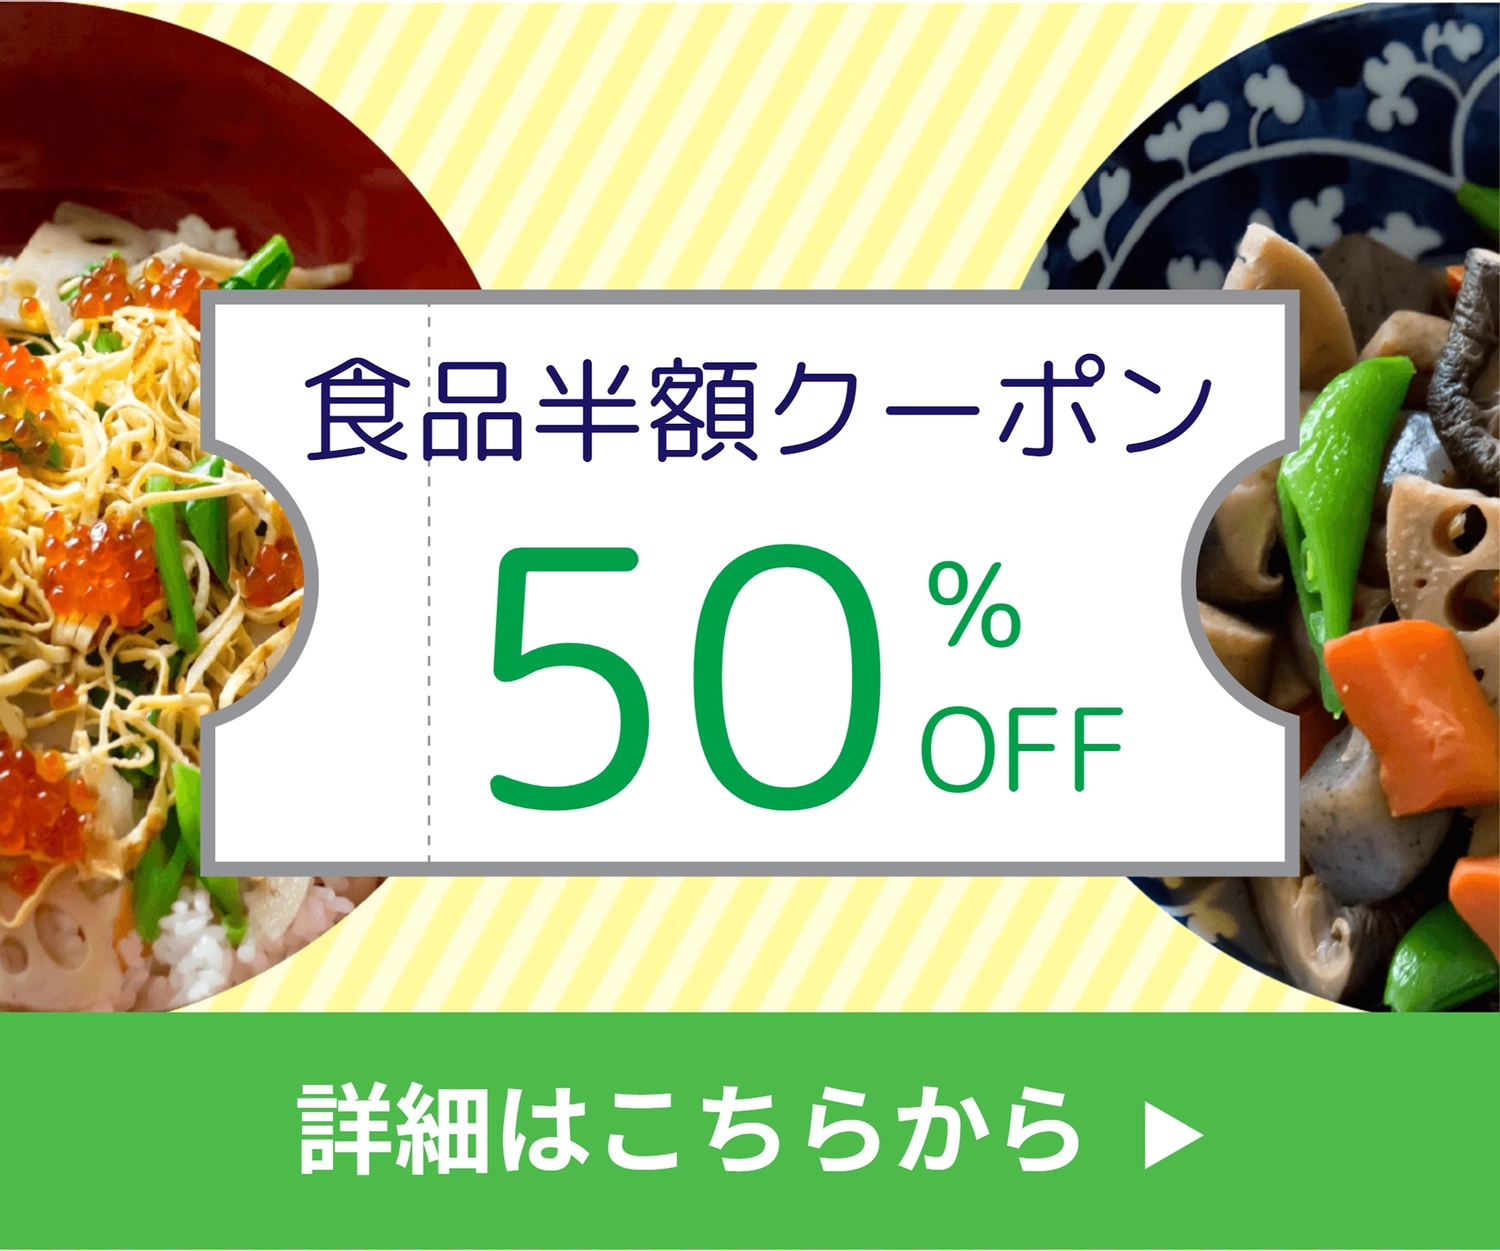 食品半額クーポンバナー, Side dish, Japanese meal, create, Banner template